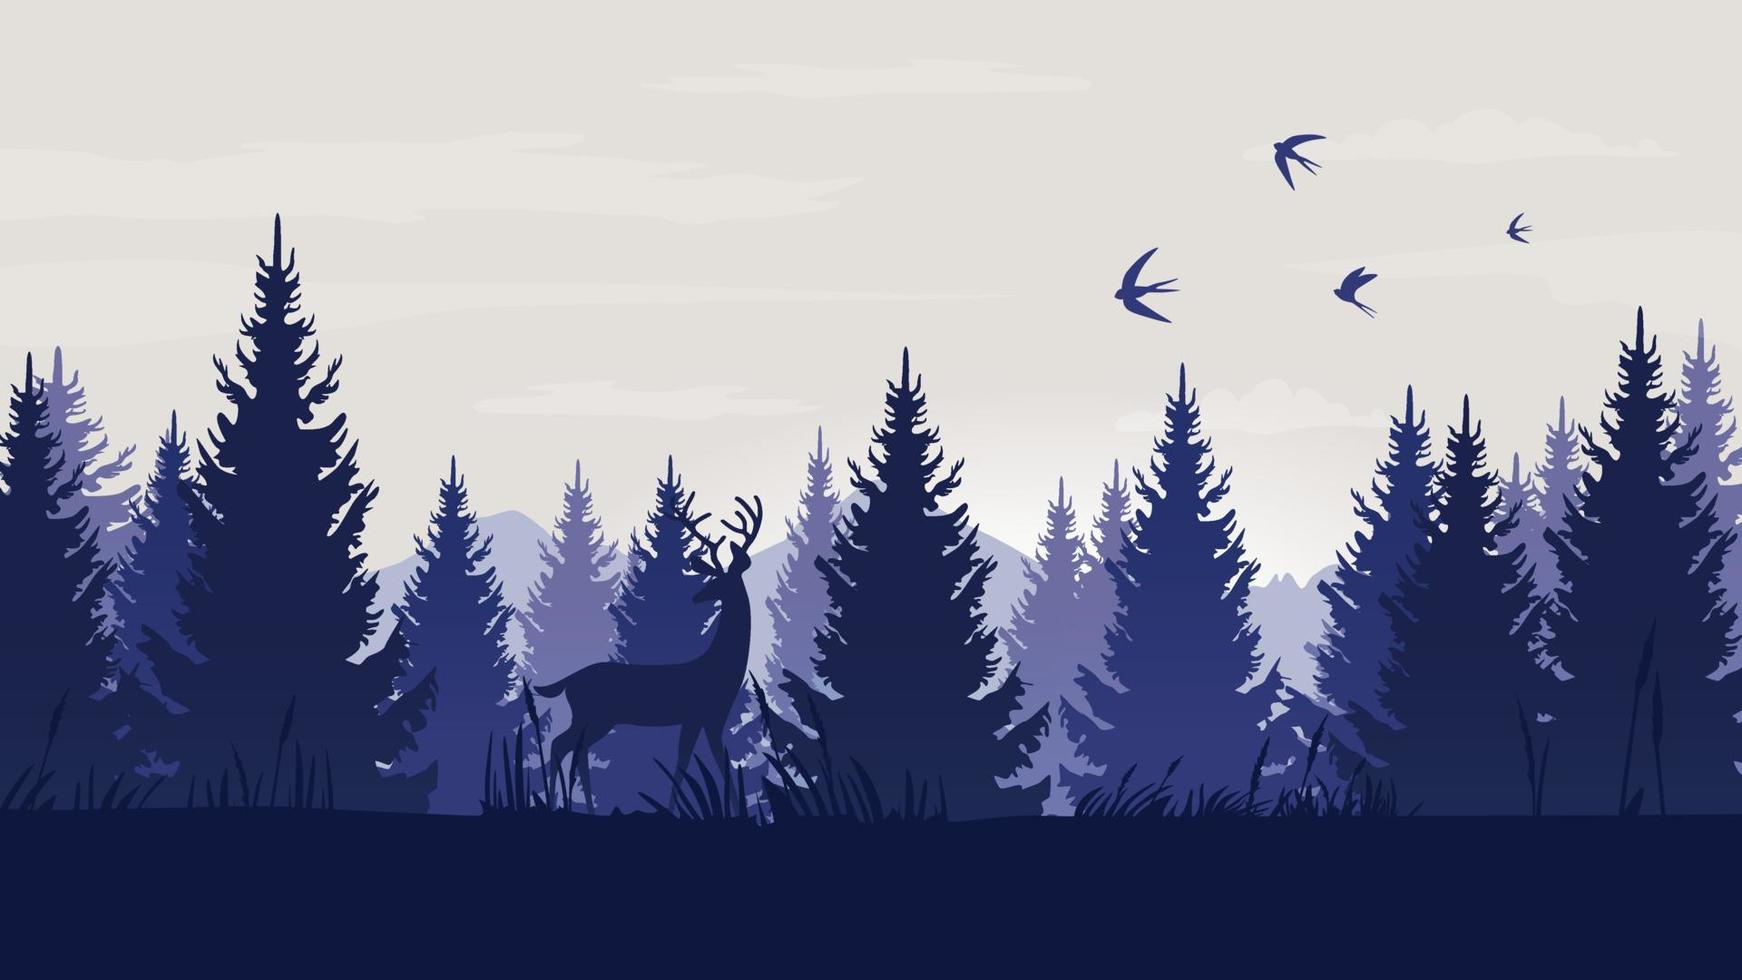 Wald Landschaft mit Blau und grün Silhouetten von Bäume und wild Tiere. Kiefer Wald. draussen und Natur Konzept. Vektor Illustration.